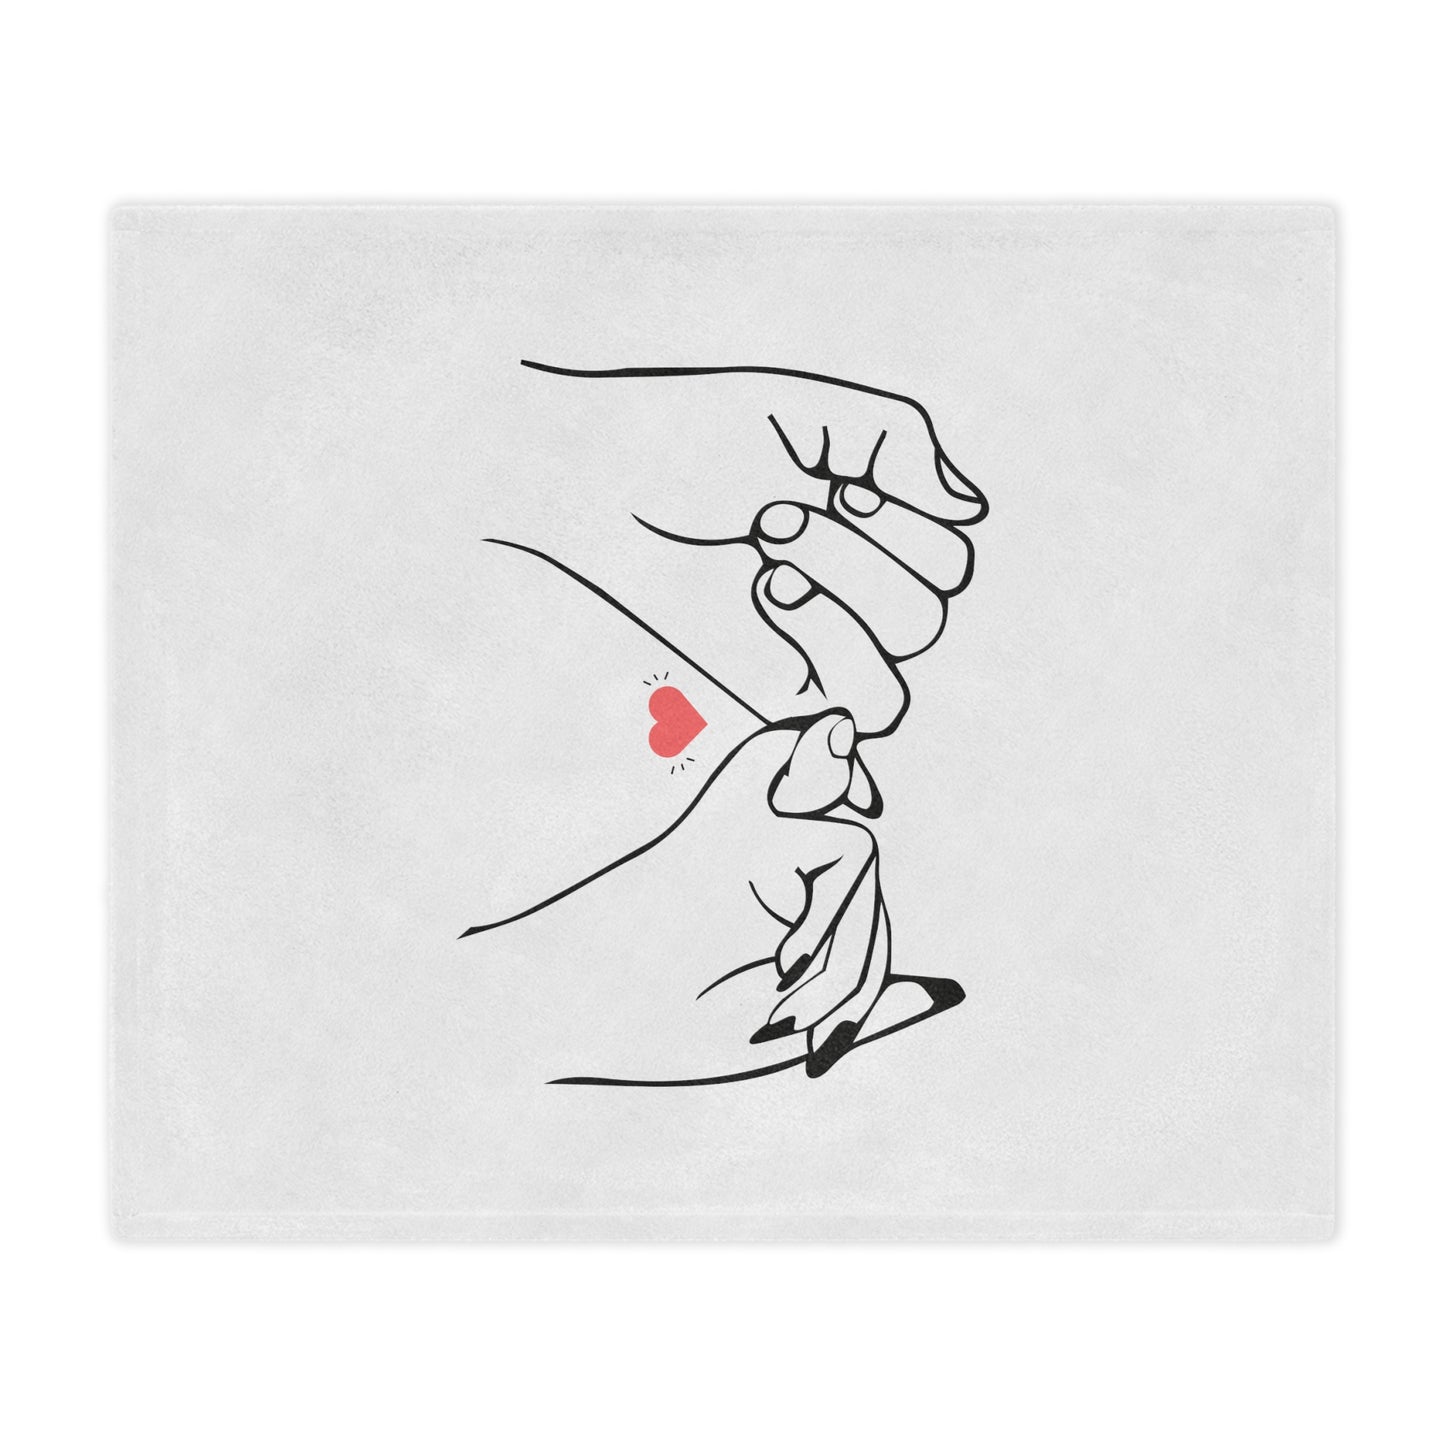 Couple's Hand Printed Velveteen Minky Blanket for Valentine